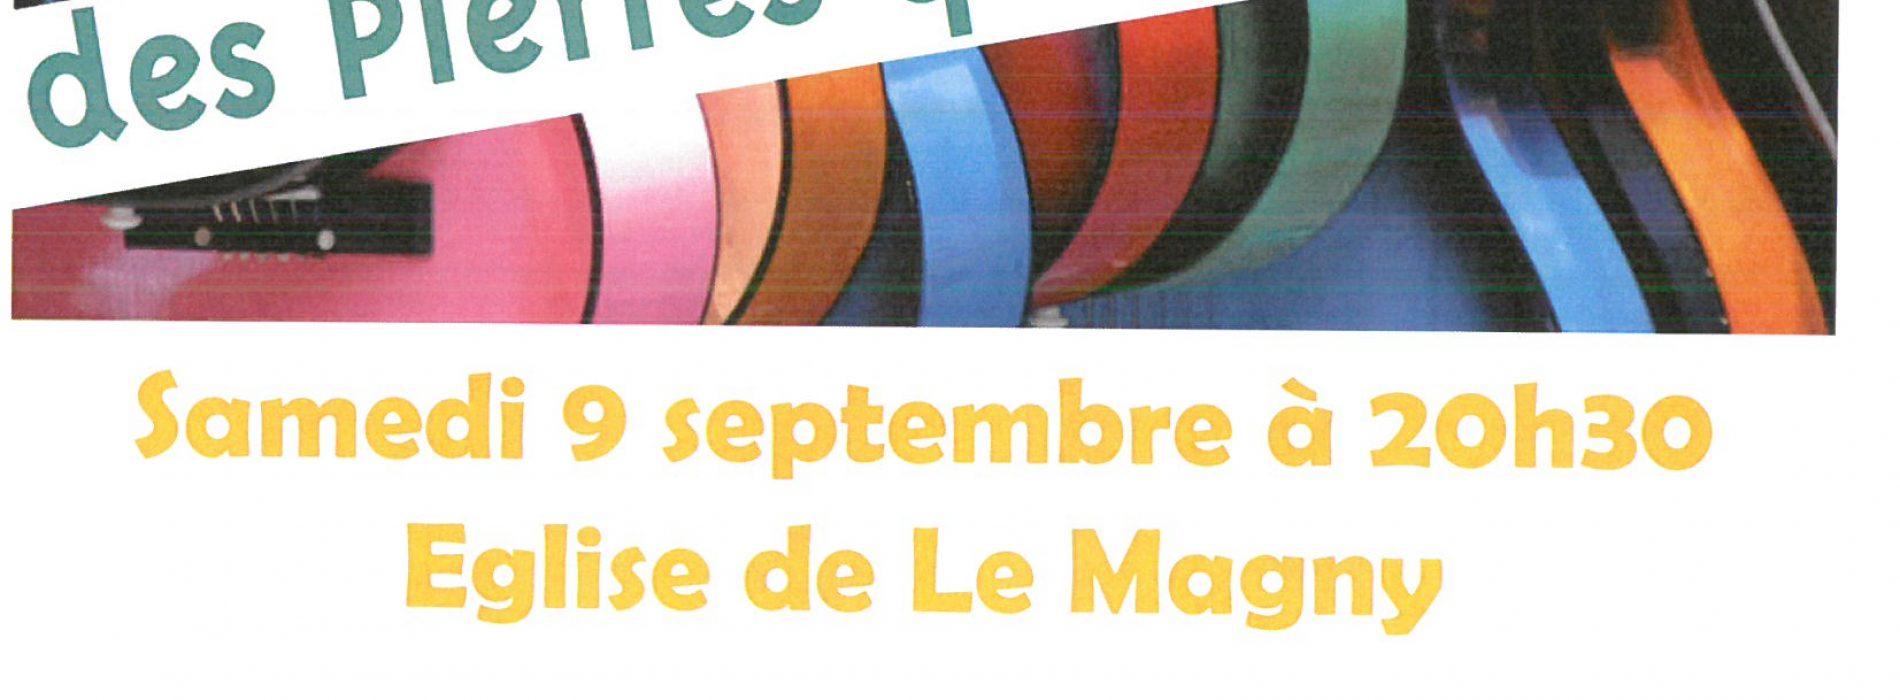 FESTIVAL DES PIERRES QUI CHANTENT SAMEDI 09 SEPTEMBRE A 20h30 Eglise Le Magny